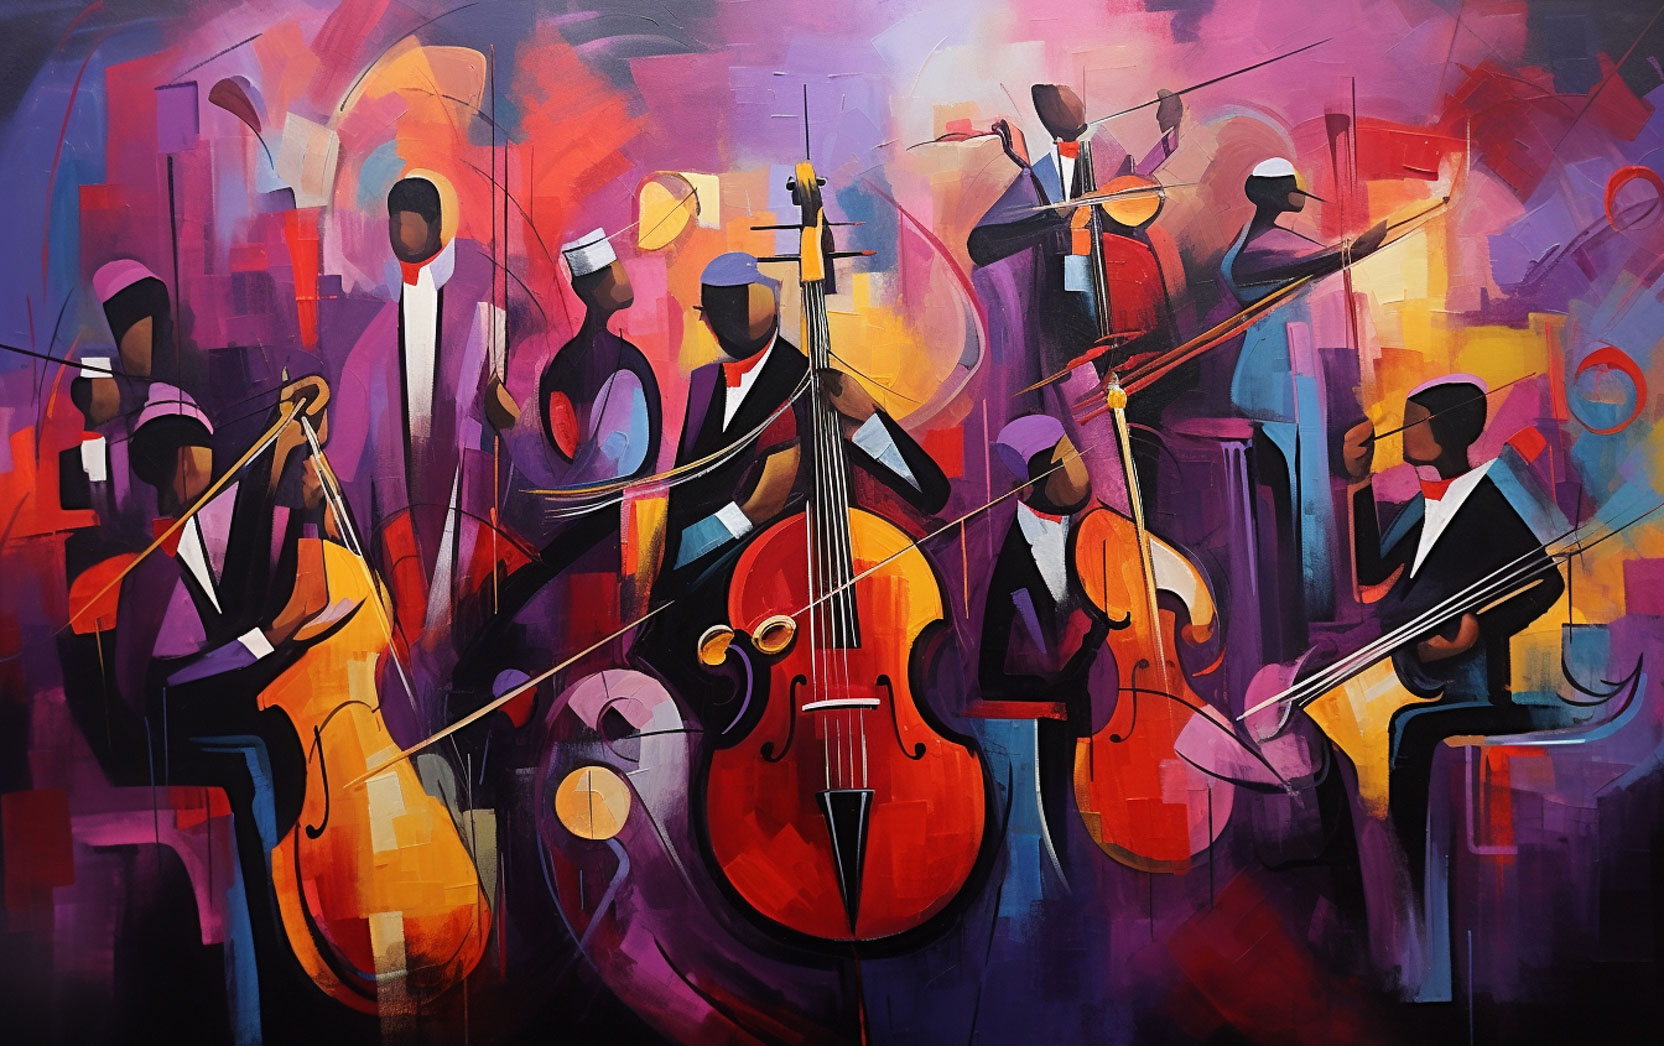 Célébration de la musique de Duke Ellington / Celebrating the music of Duke Ellington